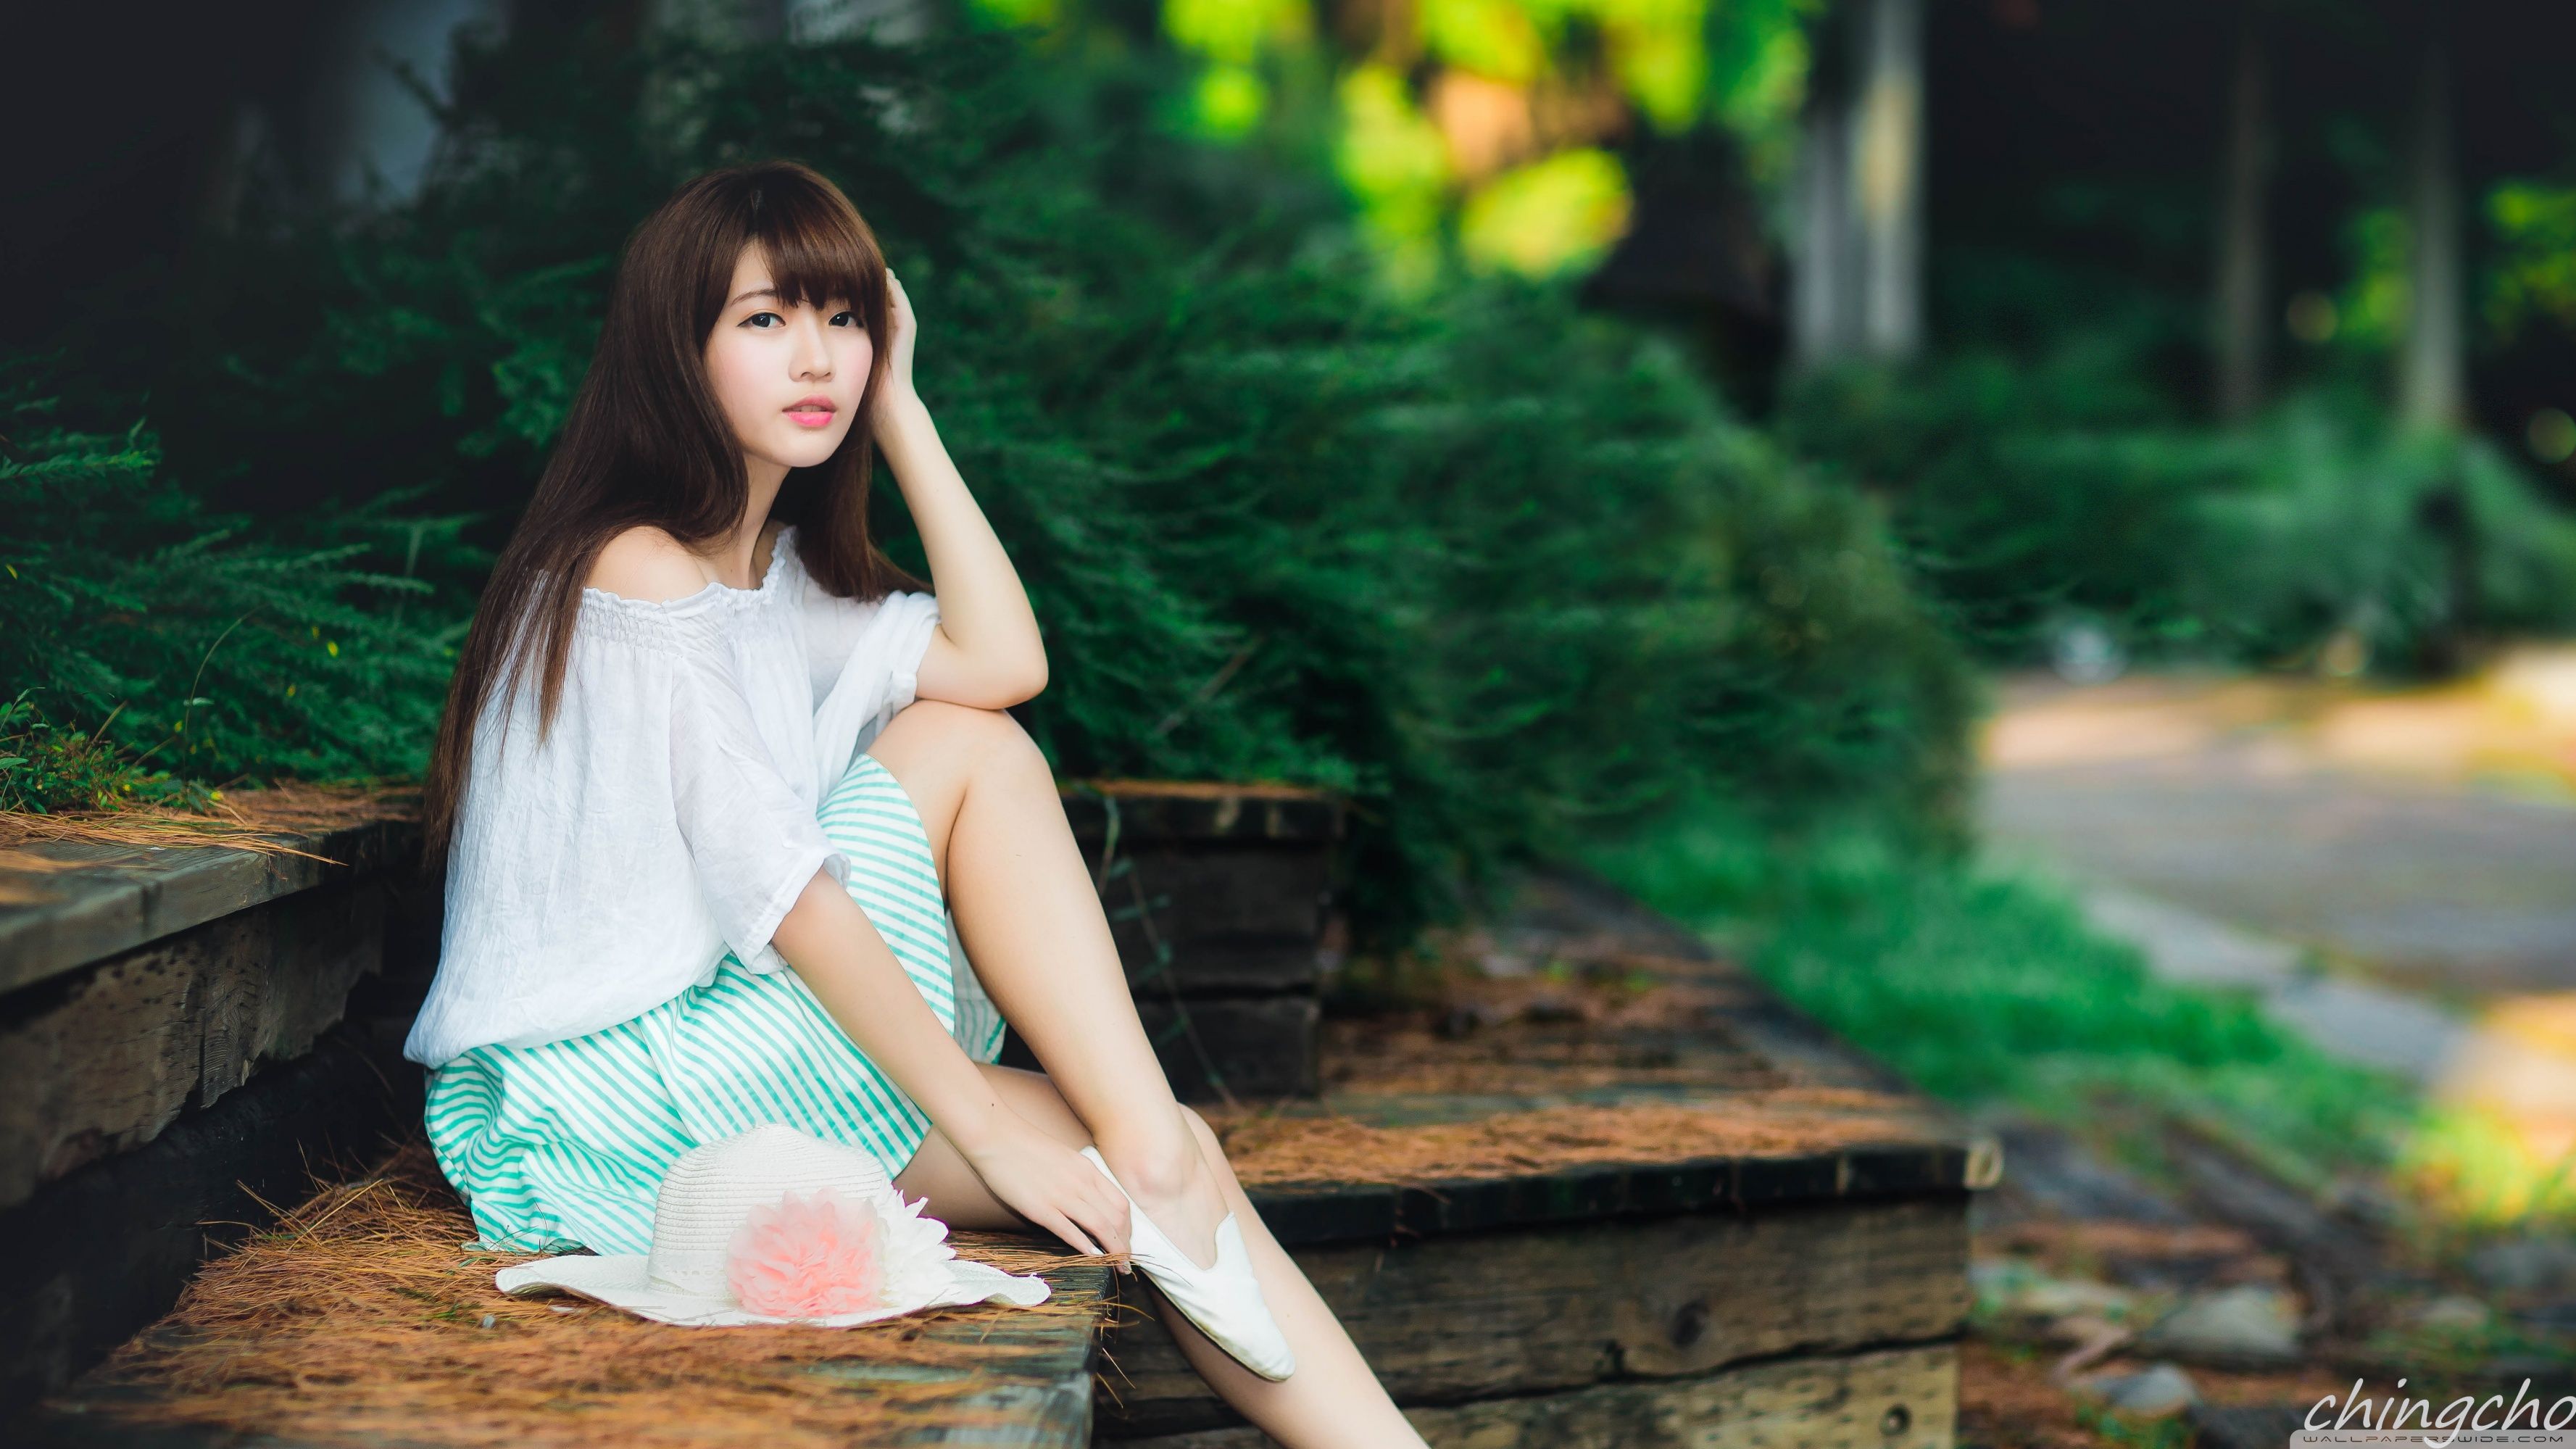 Cute Asian Girl Photography Summer Ultra HD Desktop Background